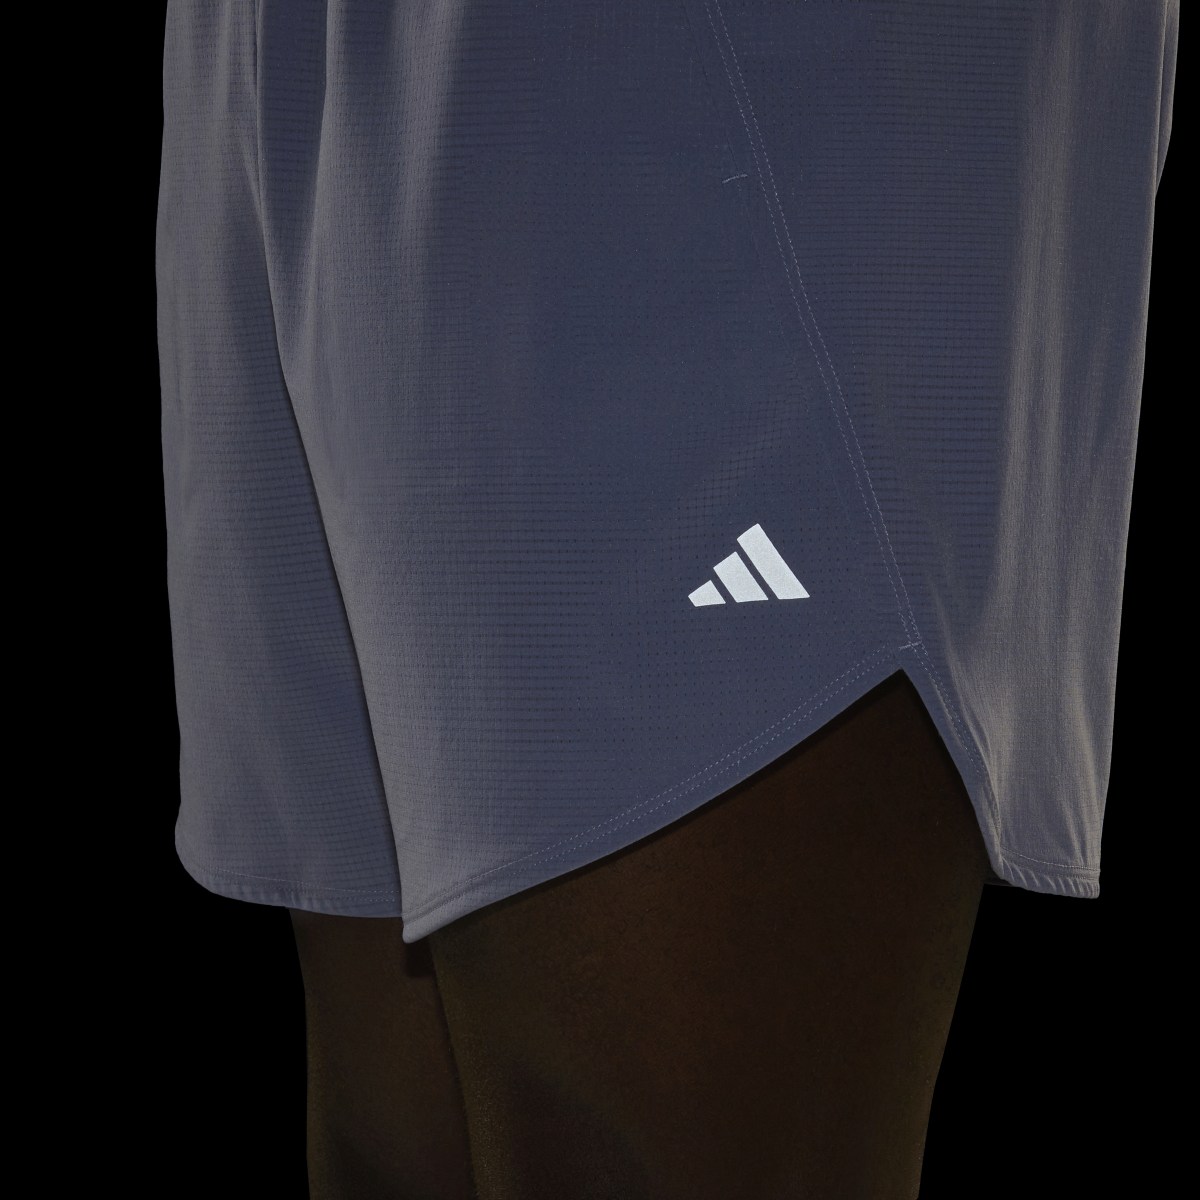 Adidas Designed for Training HIIT Training Shorts. 7